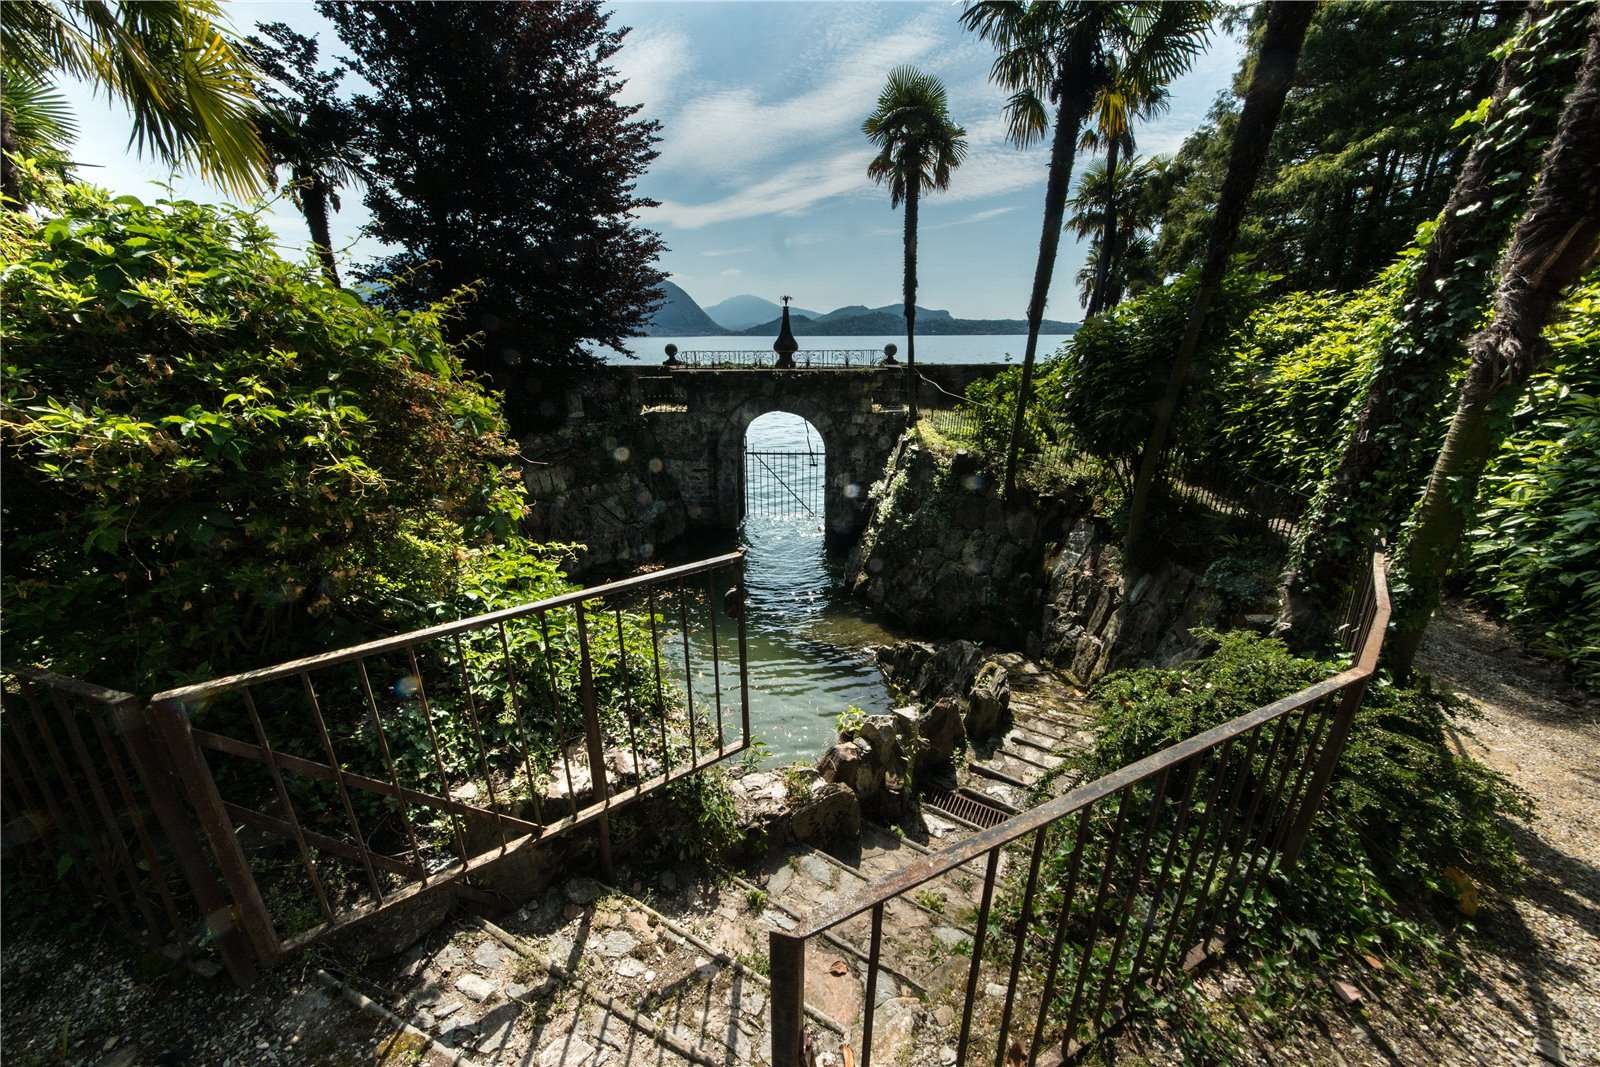 Francis YorkVilla L'Eremitaggio: Historic Villa On Lake Maggiore 11.jpg